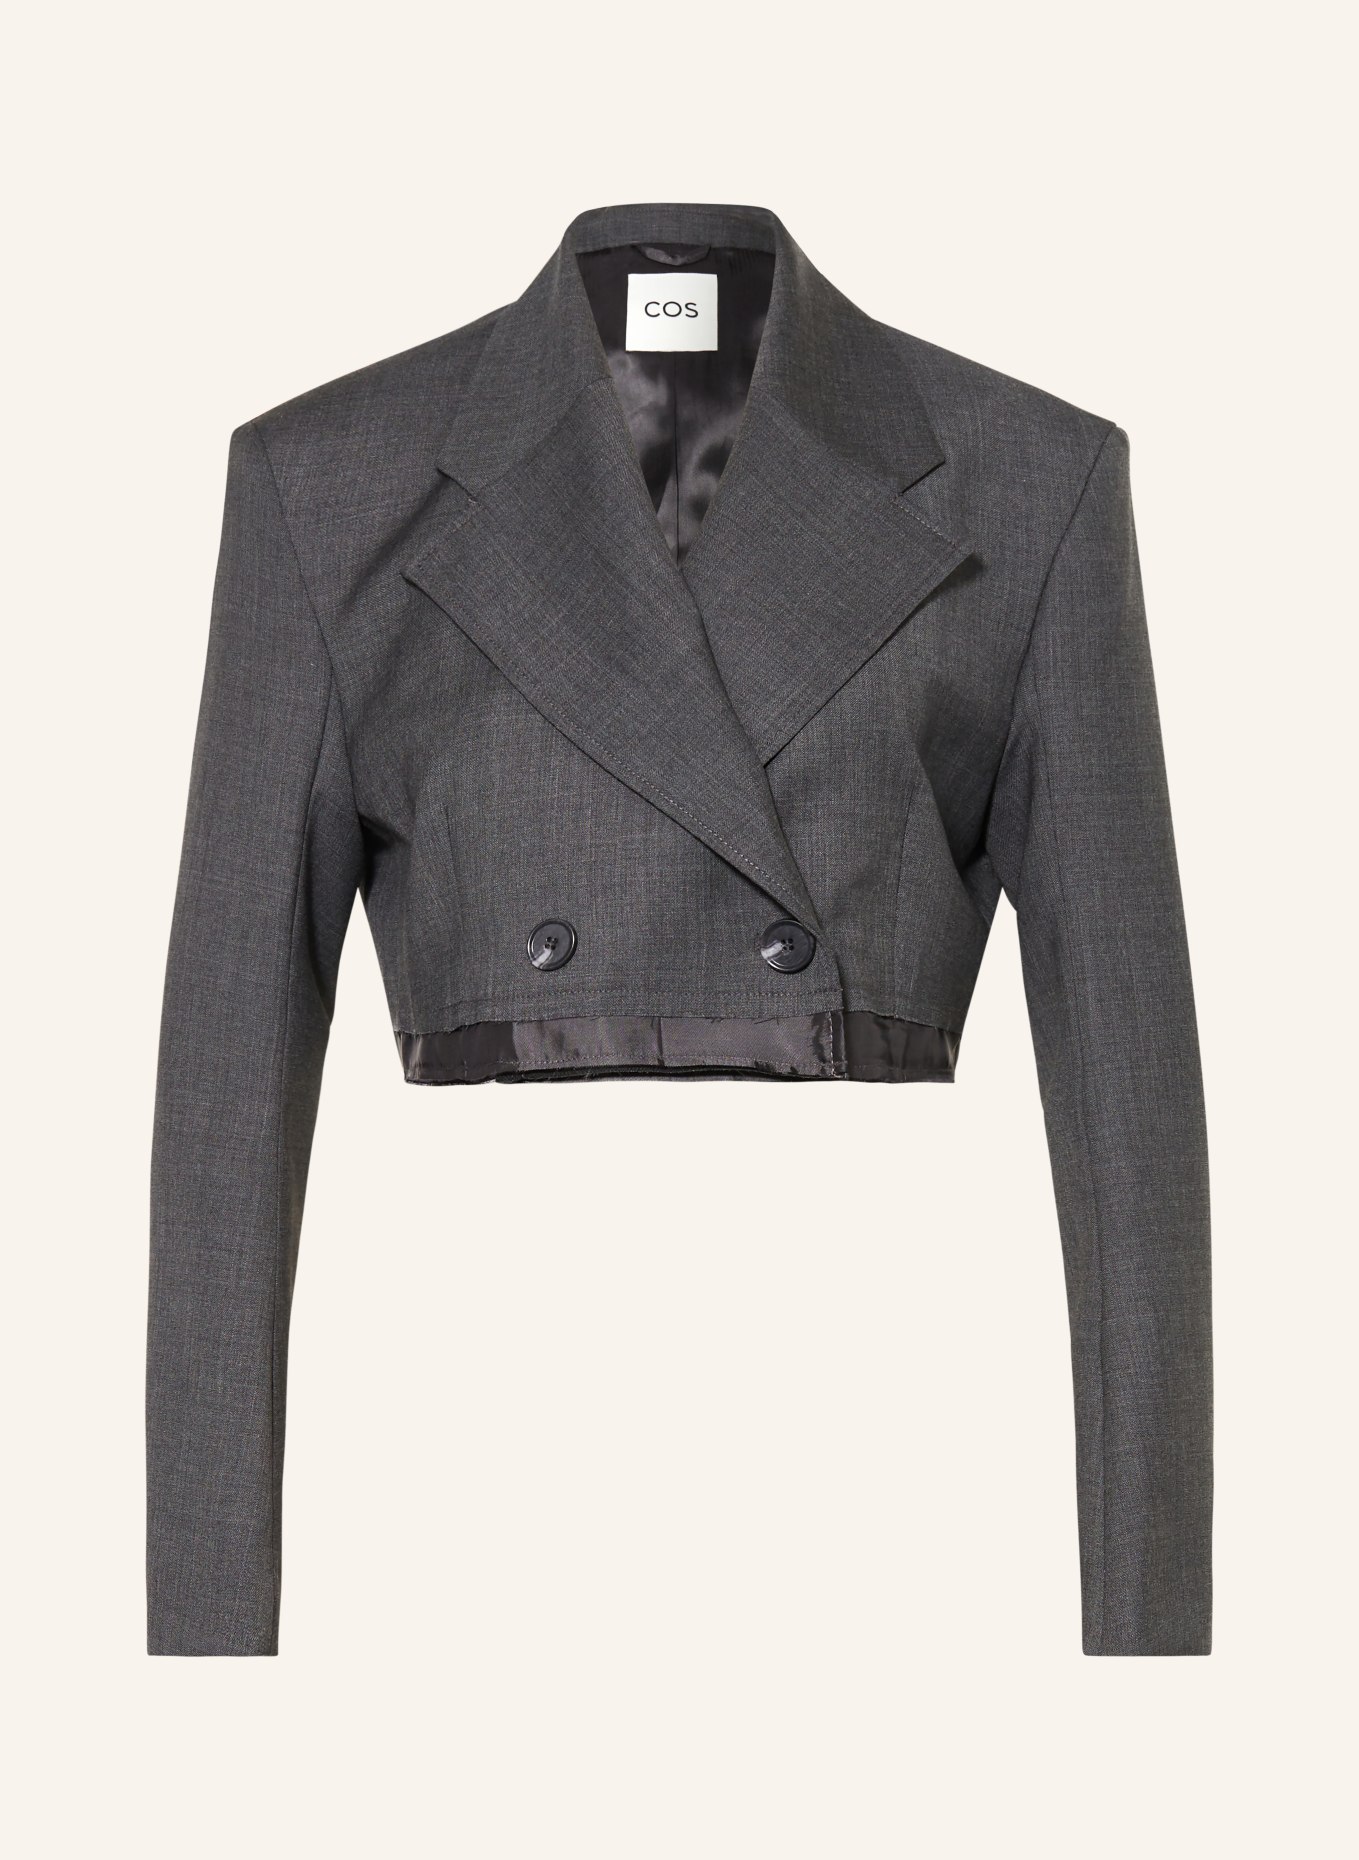 COS Cropped blazer, Color: GRAY (Image 1)